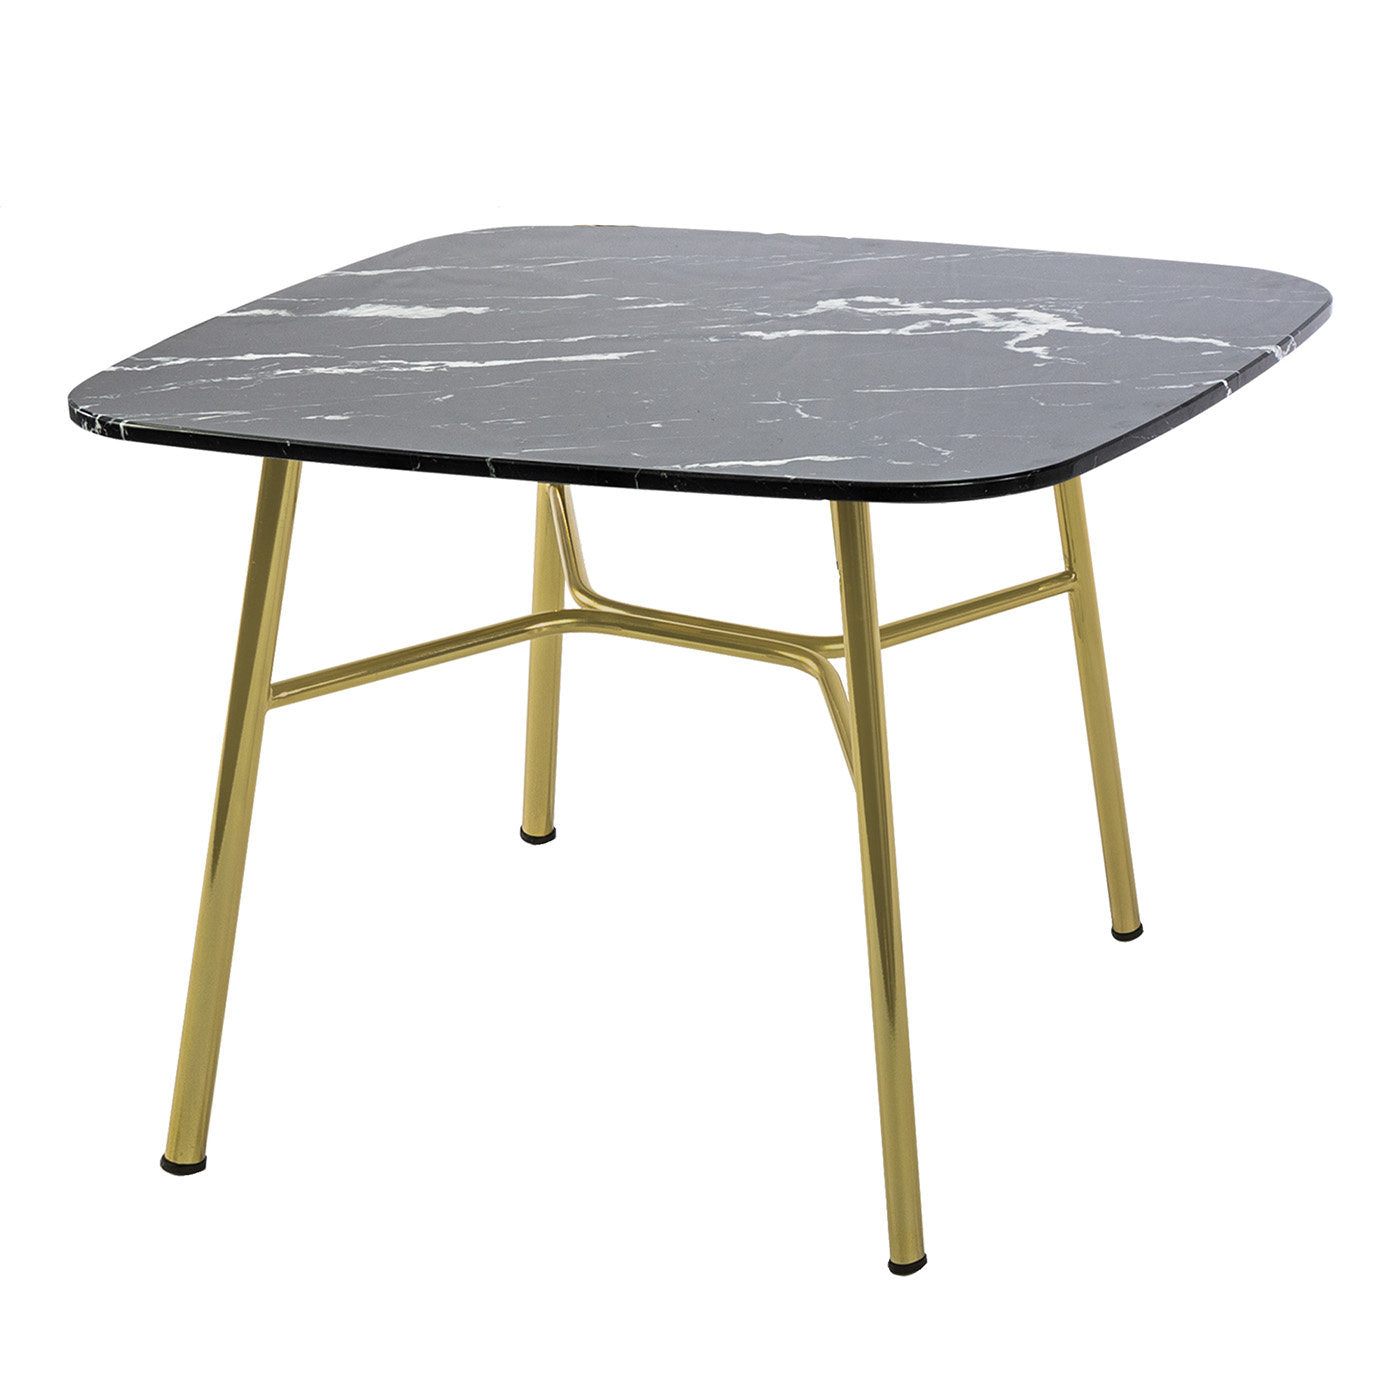 Table d'appoint carrée Yuki avec plateau en marquinia noir # 2 par Ep Studio - Vue principale